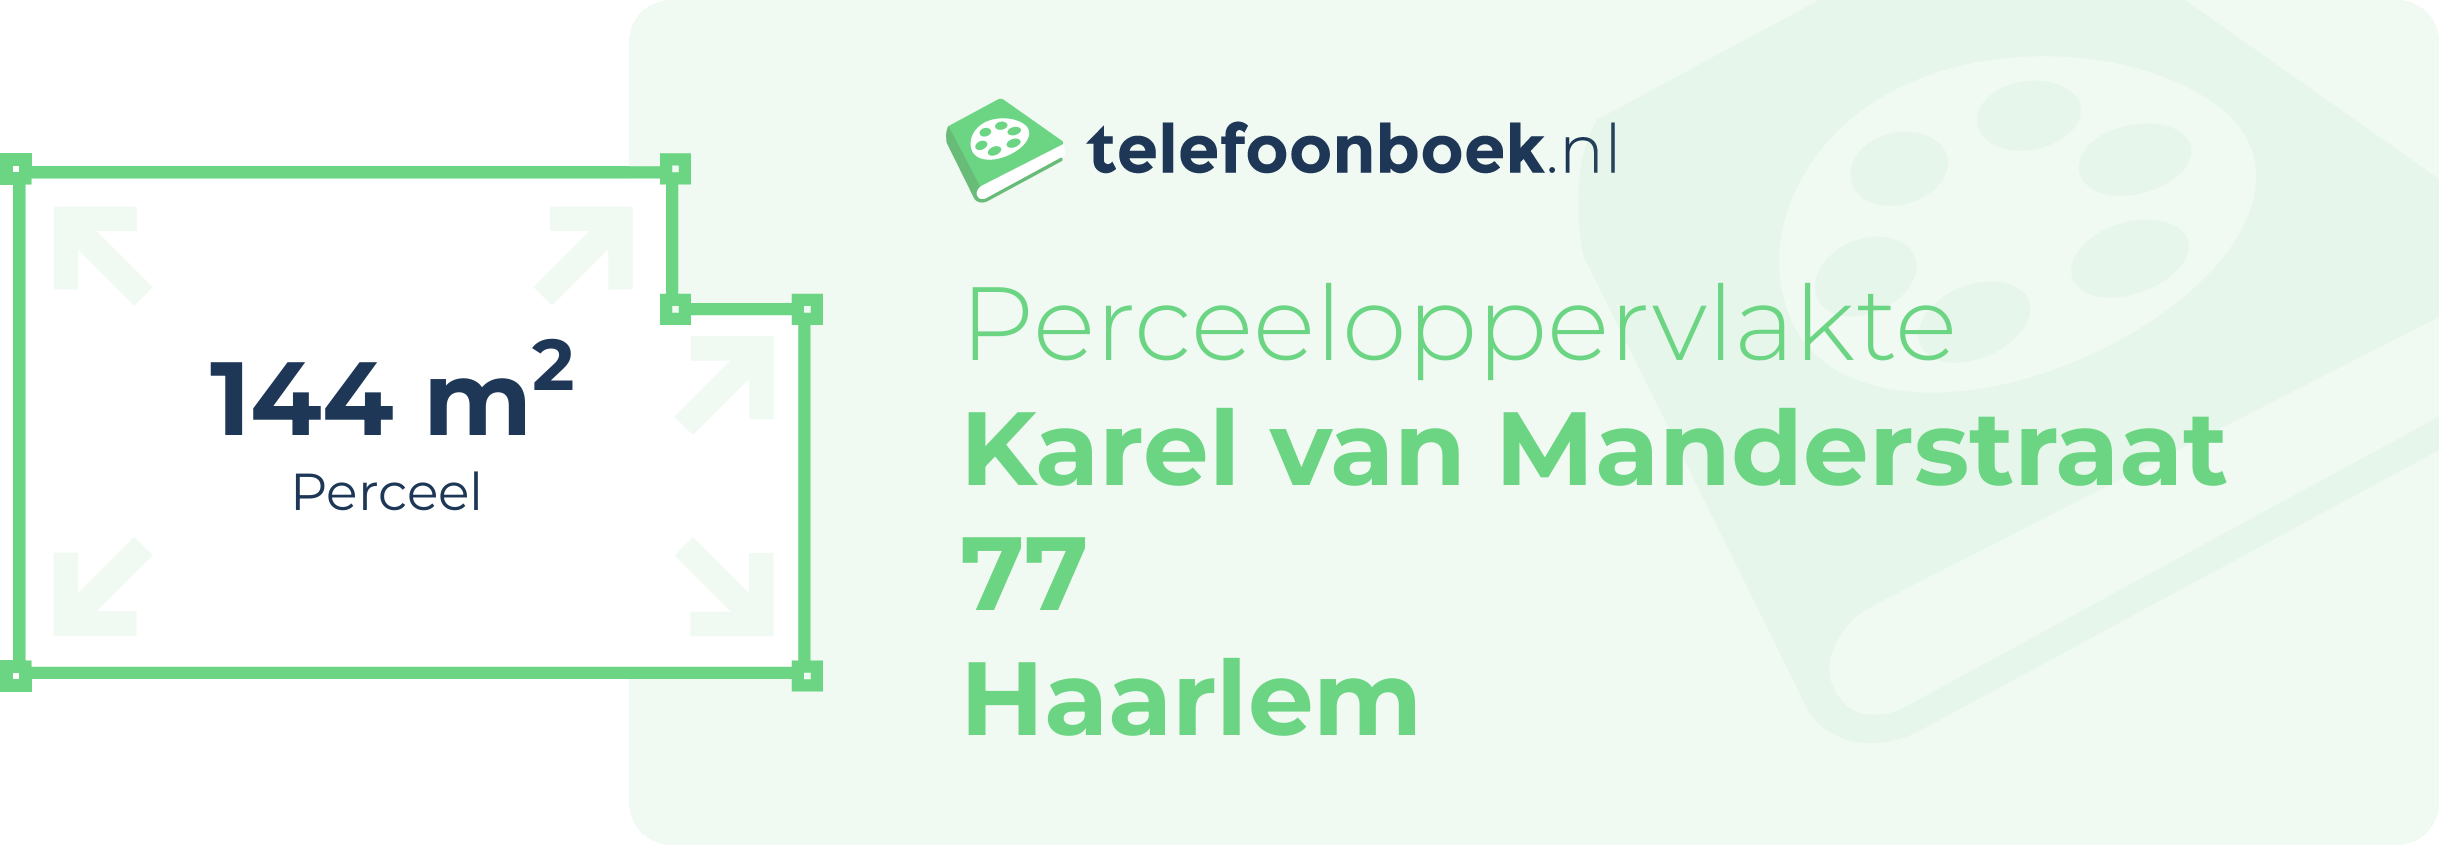 Perceeloppervlakte Karel Van Manderstraat 77 Haarlem